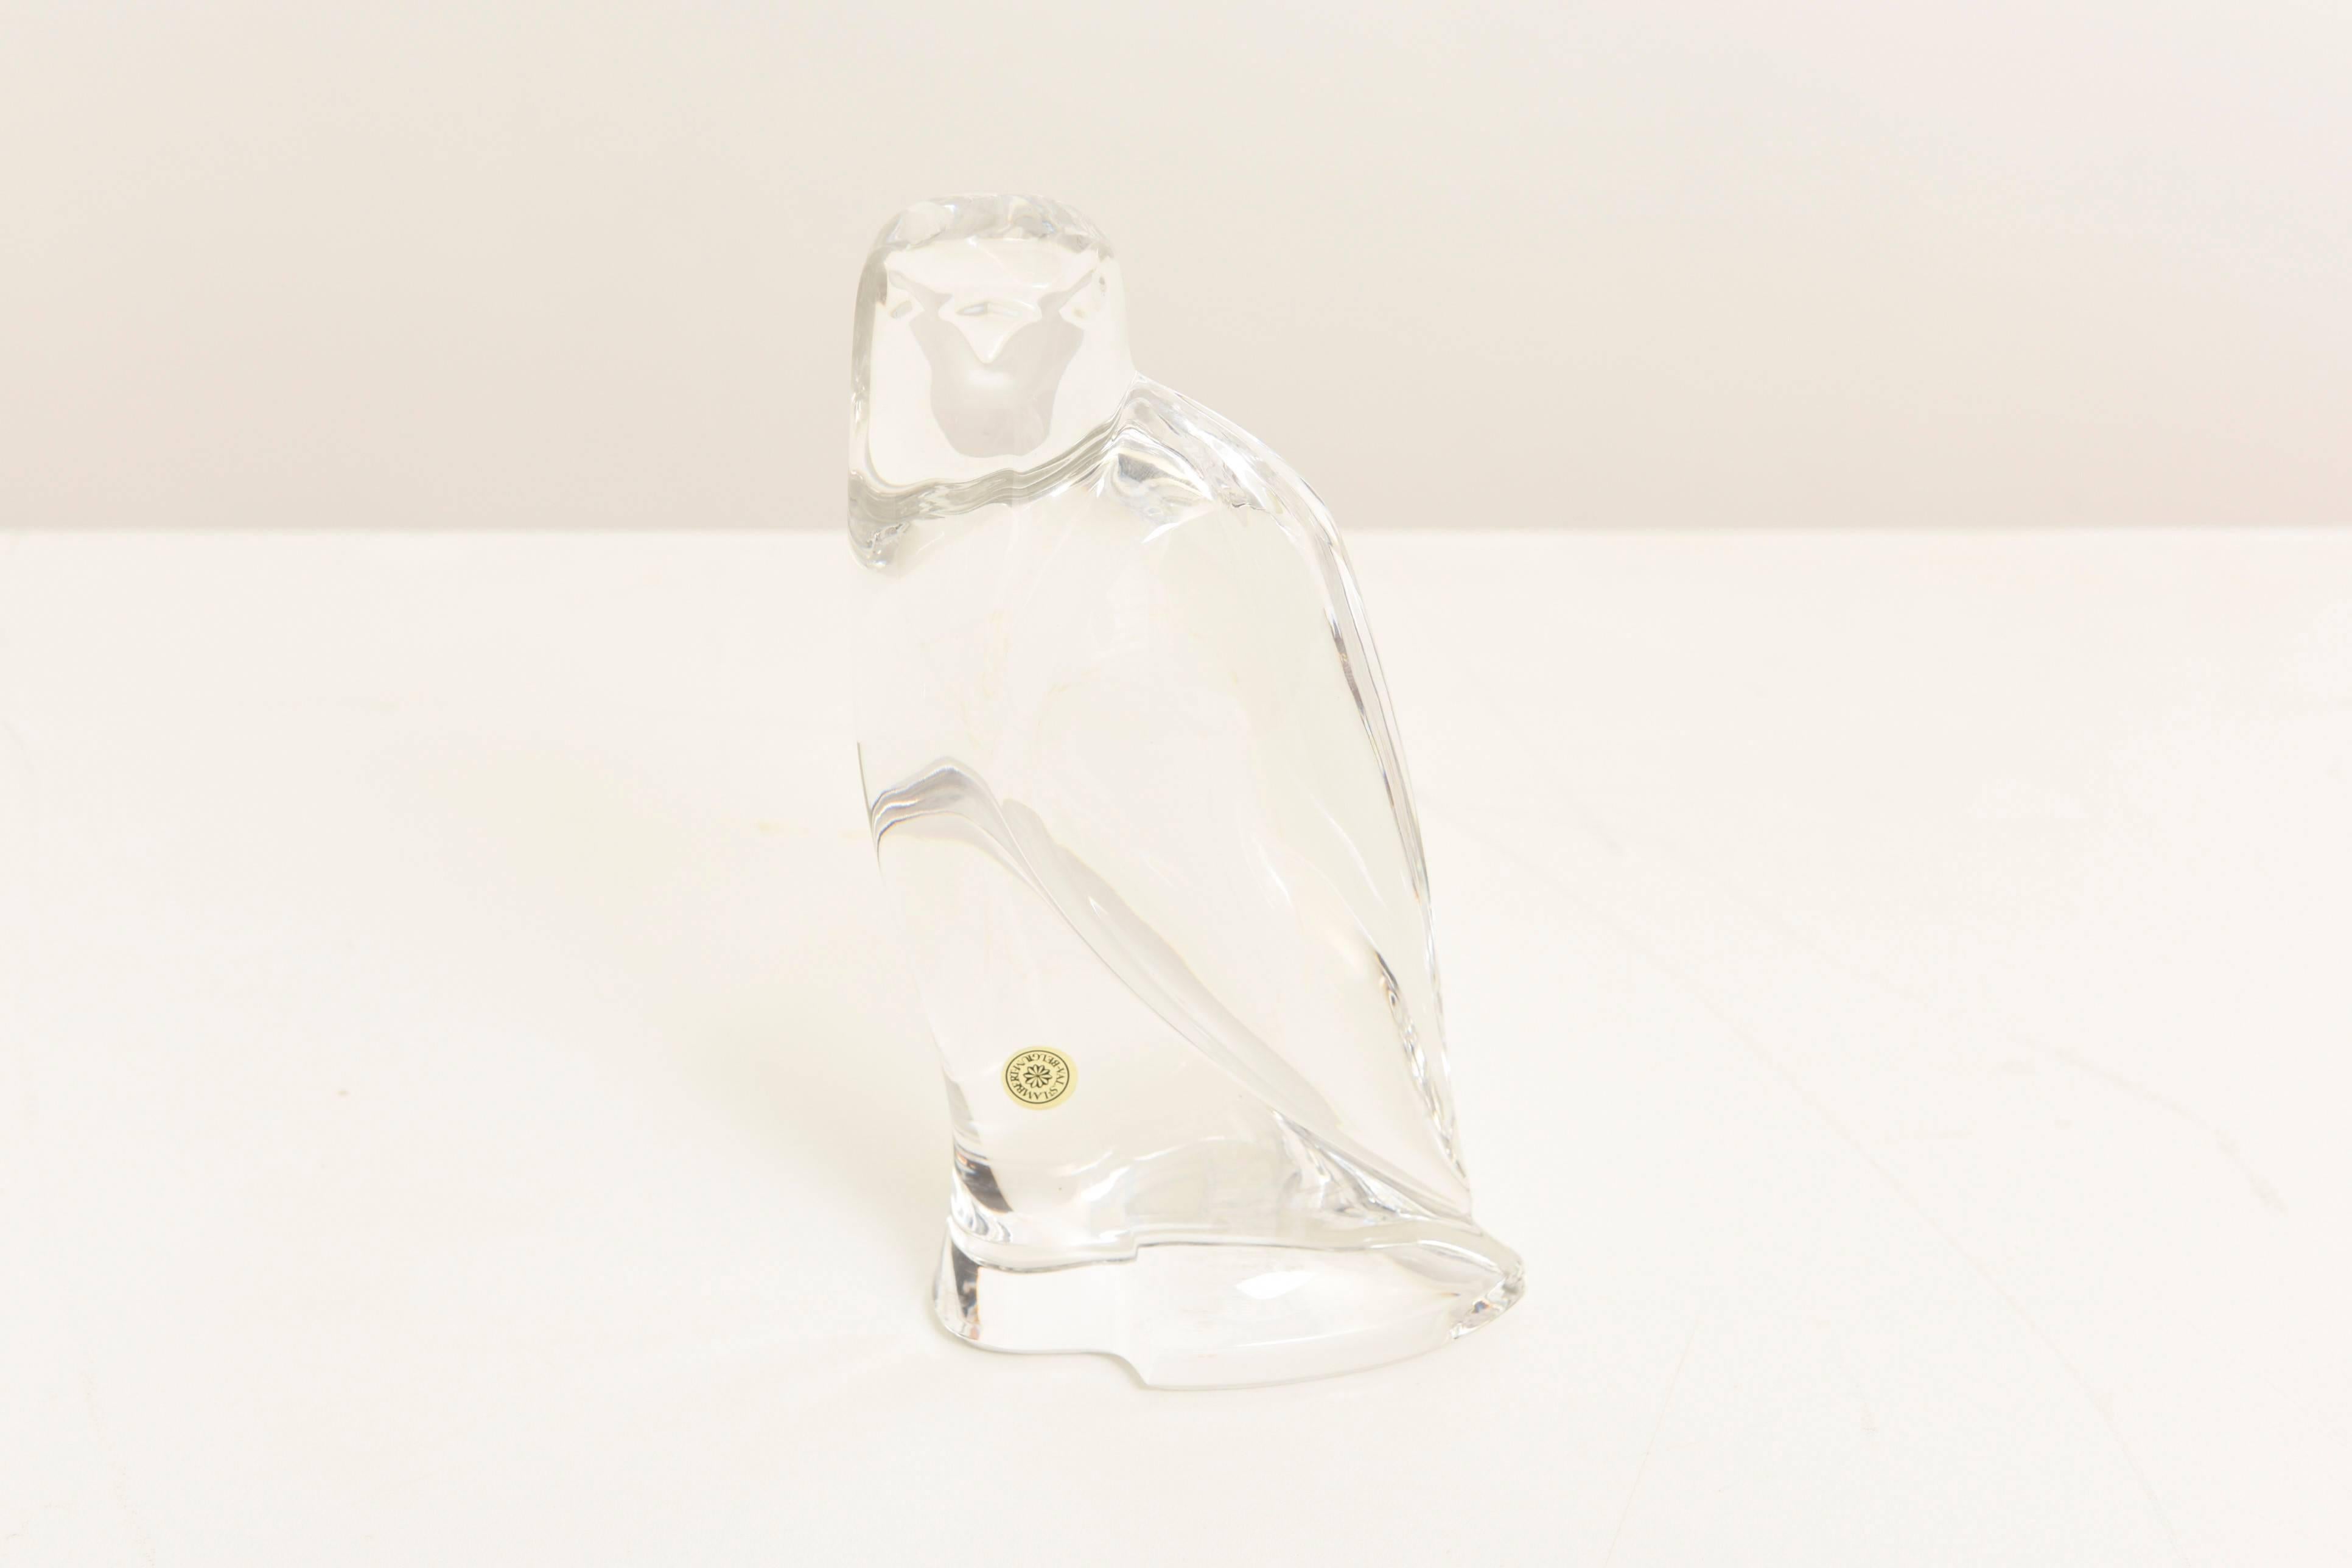 Sehr schöne Skulptur eines Falken aus Kristall, entworfen von Val St Lamber.

Mundgeblasen in einer Form und handgefertigt, sehr helle Lichtintensität.
Label mit dem alten Stempel von Val St. Lamber. 

Ein großartiges stilisiertes Tierstück zur